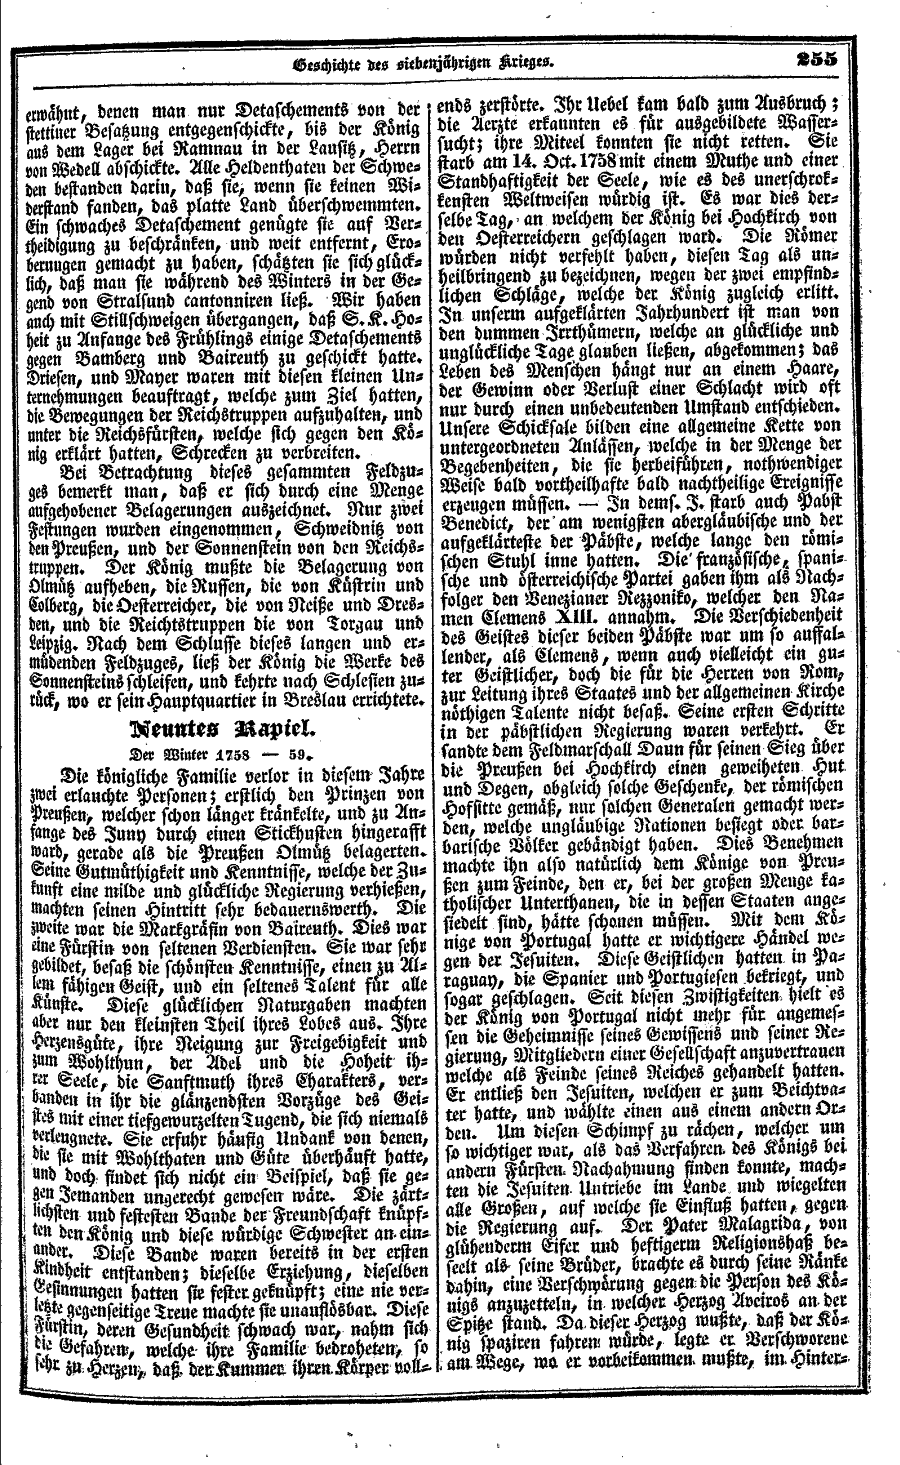 S. 255, Obj. 2